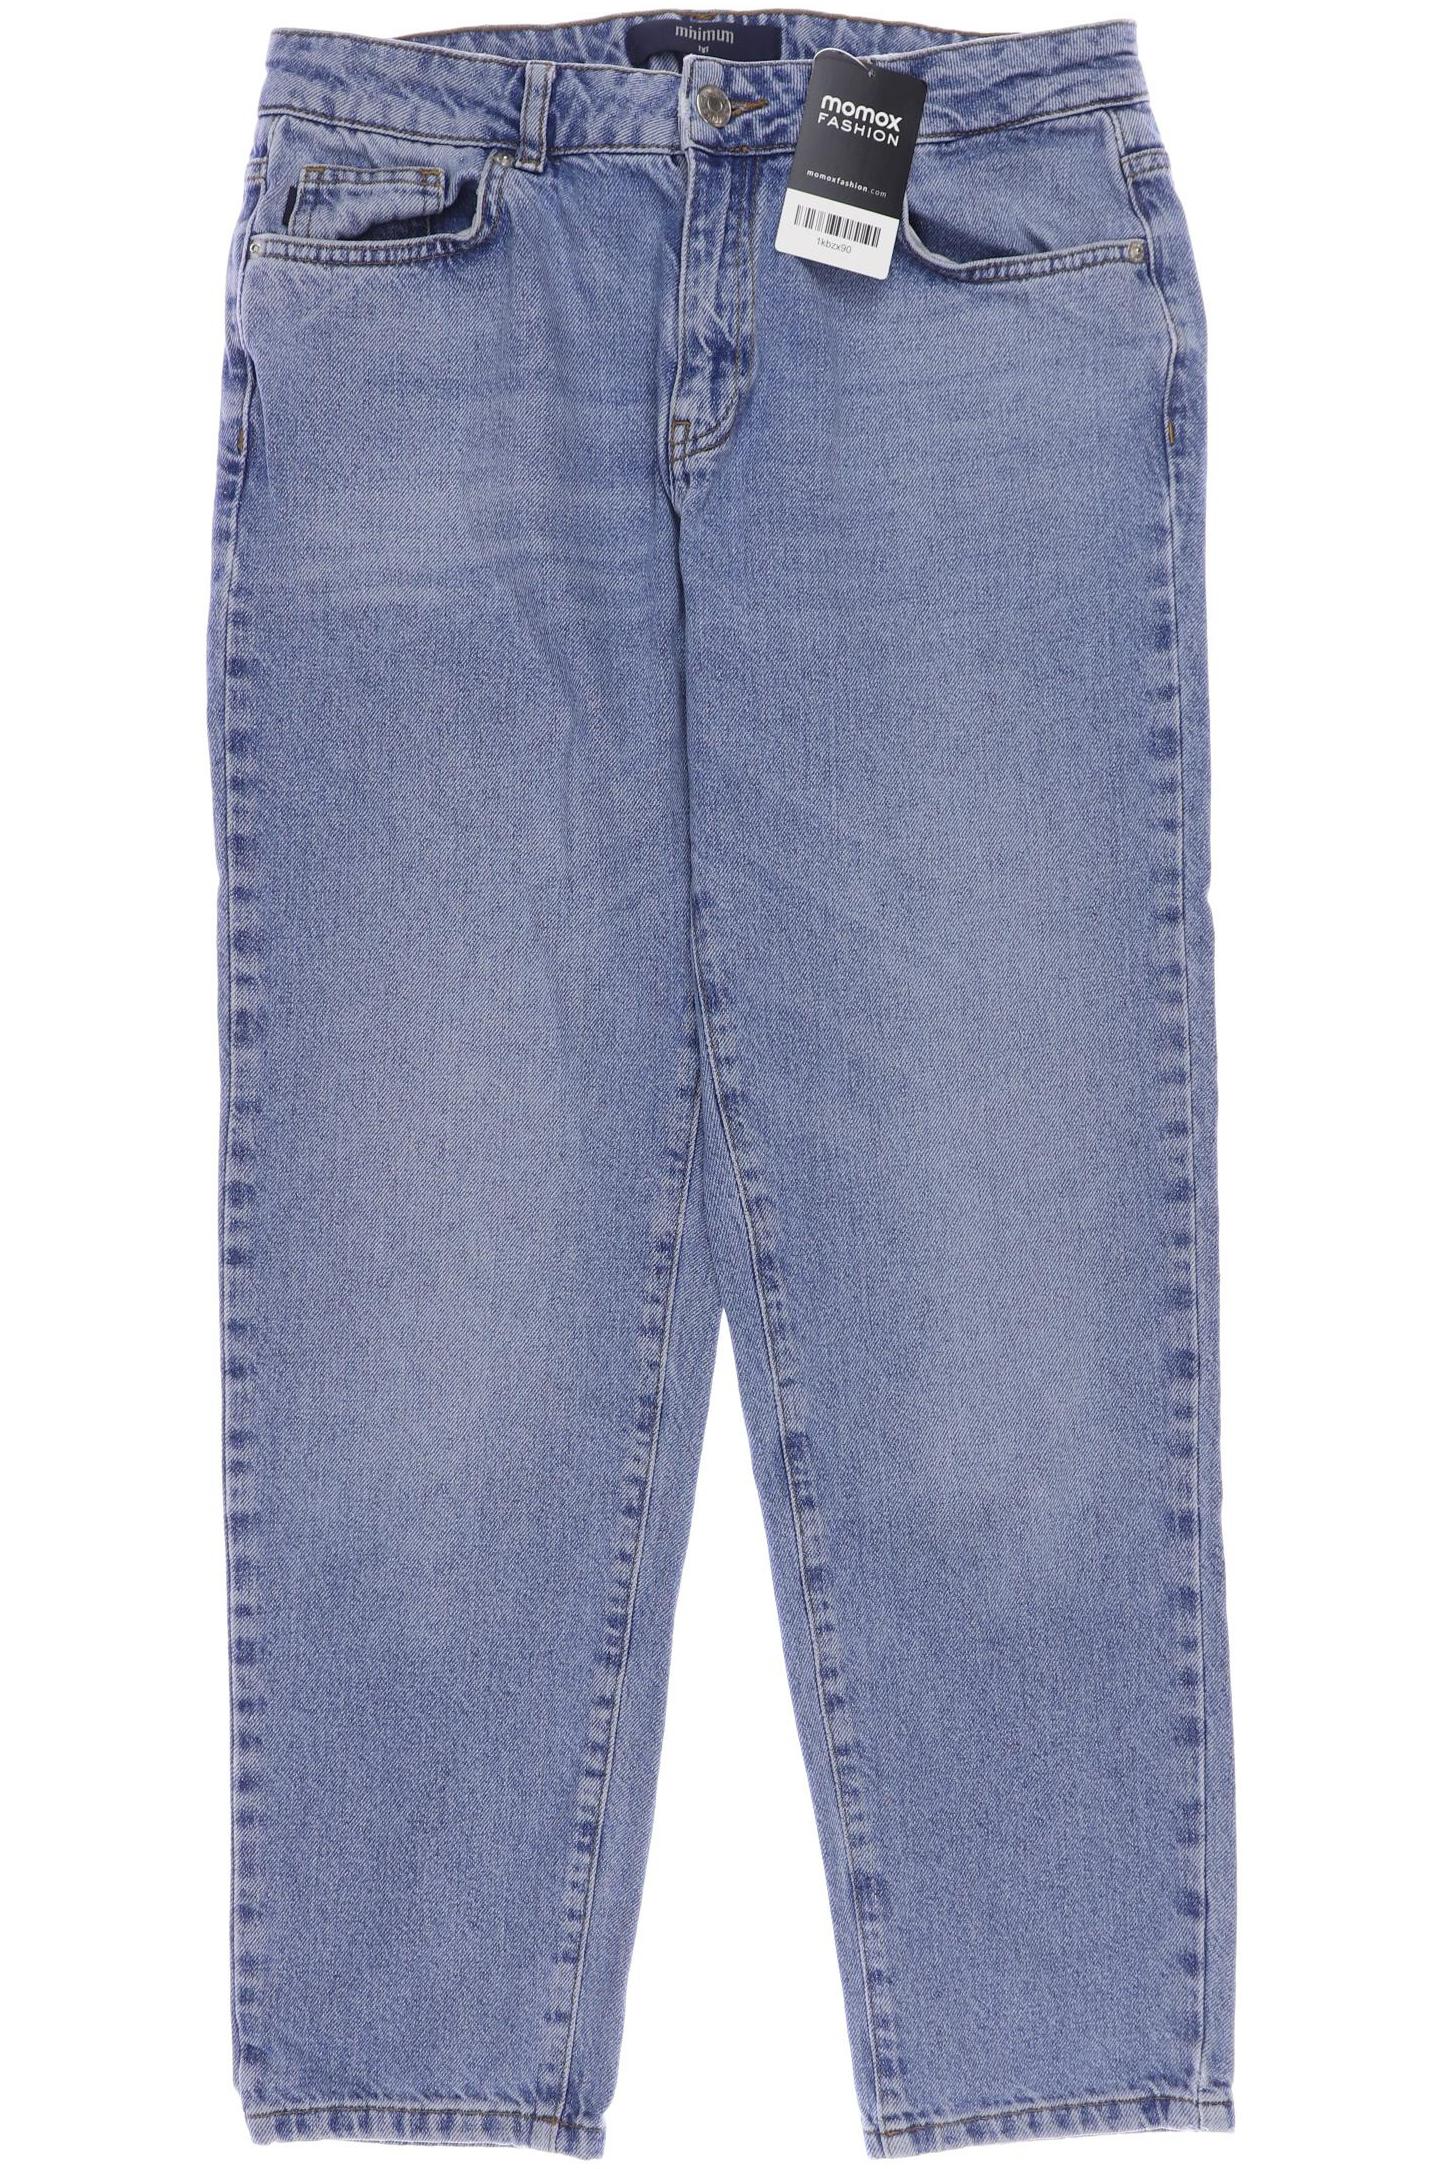 Minimum Damen Jeans, blau, Gr. 38 von Minimum